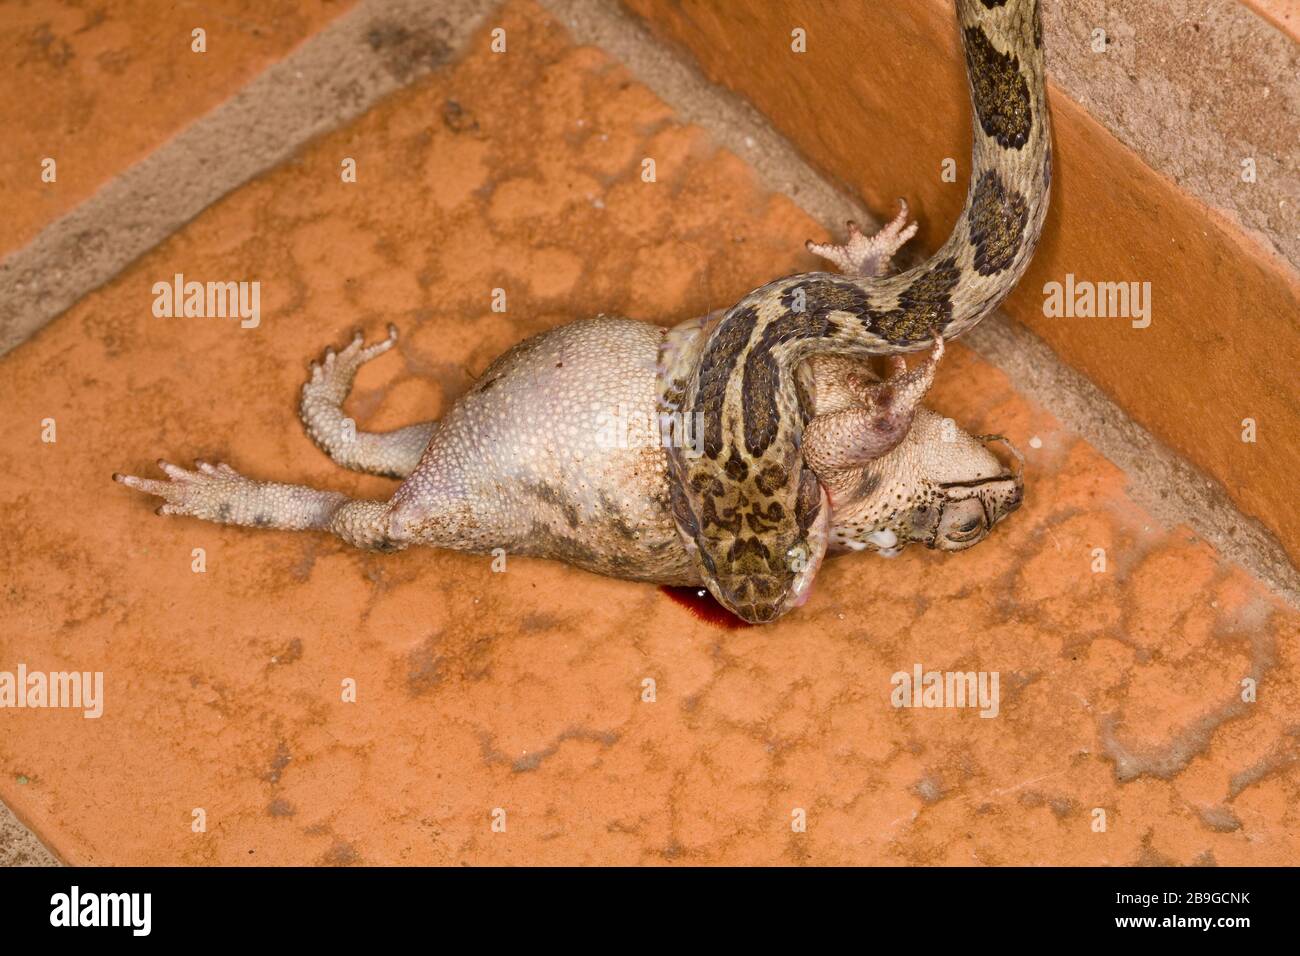 Jararaca-mouth-of-toad, Bothrops neuwiedii,  Predando a Toad, Predação, Miranda, Mato Grosso do Sul, Brazil Stock Photo